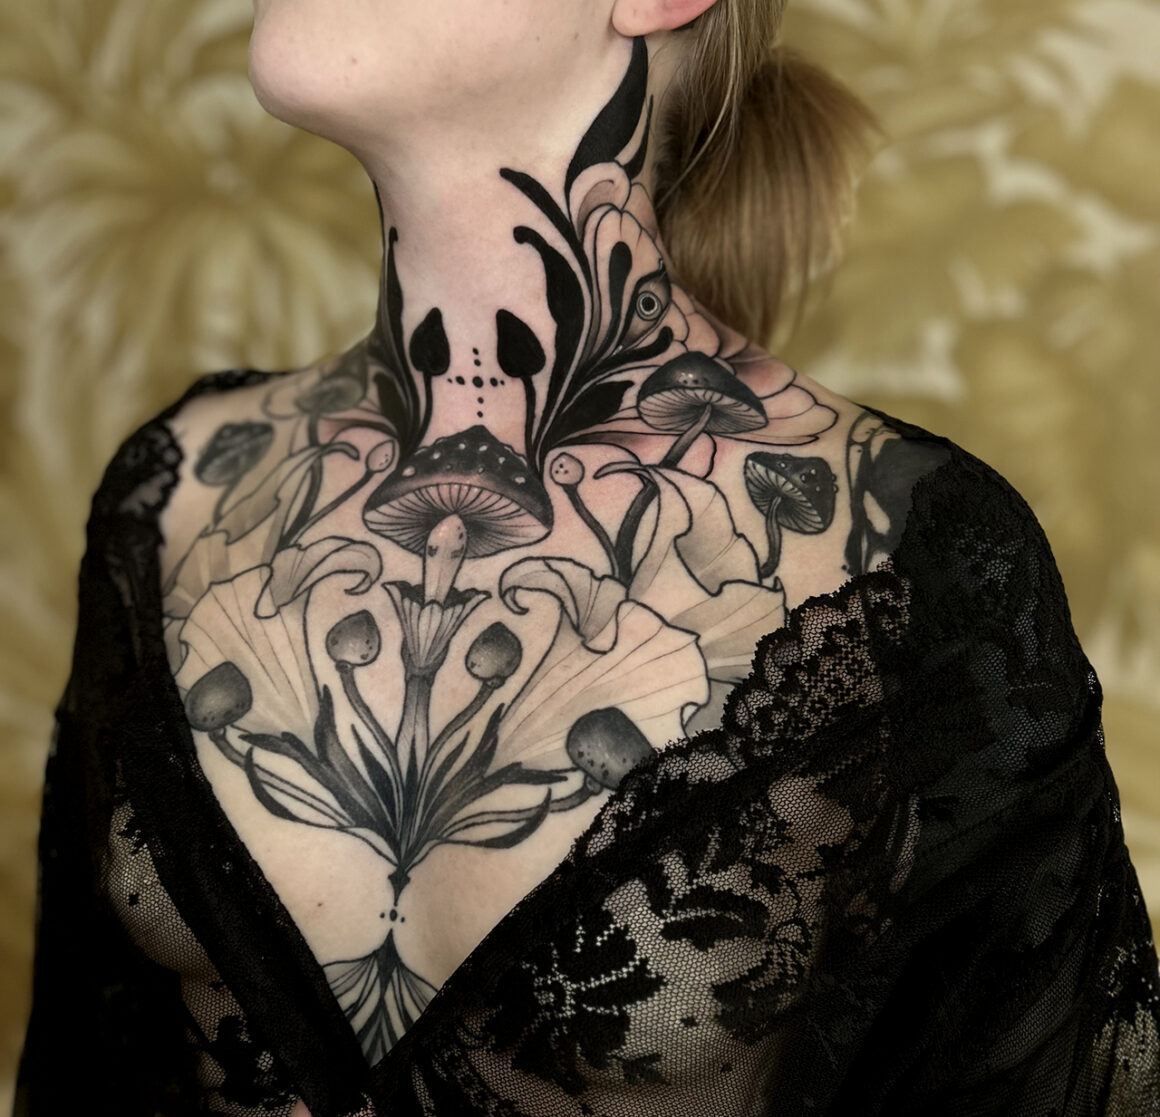 Tattoo by Lorena Morato @lore.morato, Golden Times Atelier @goldentimesatelier